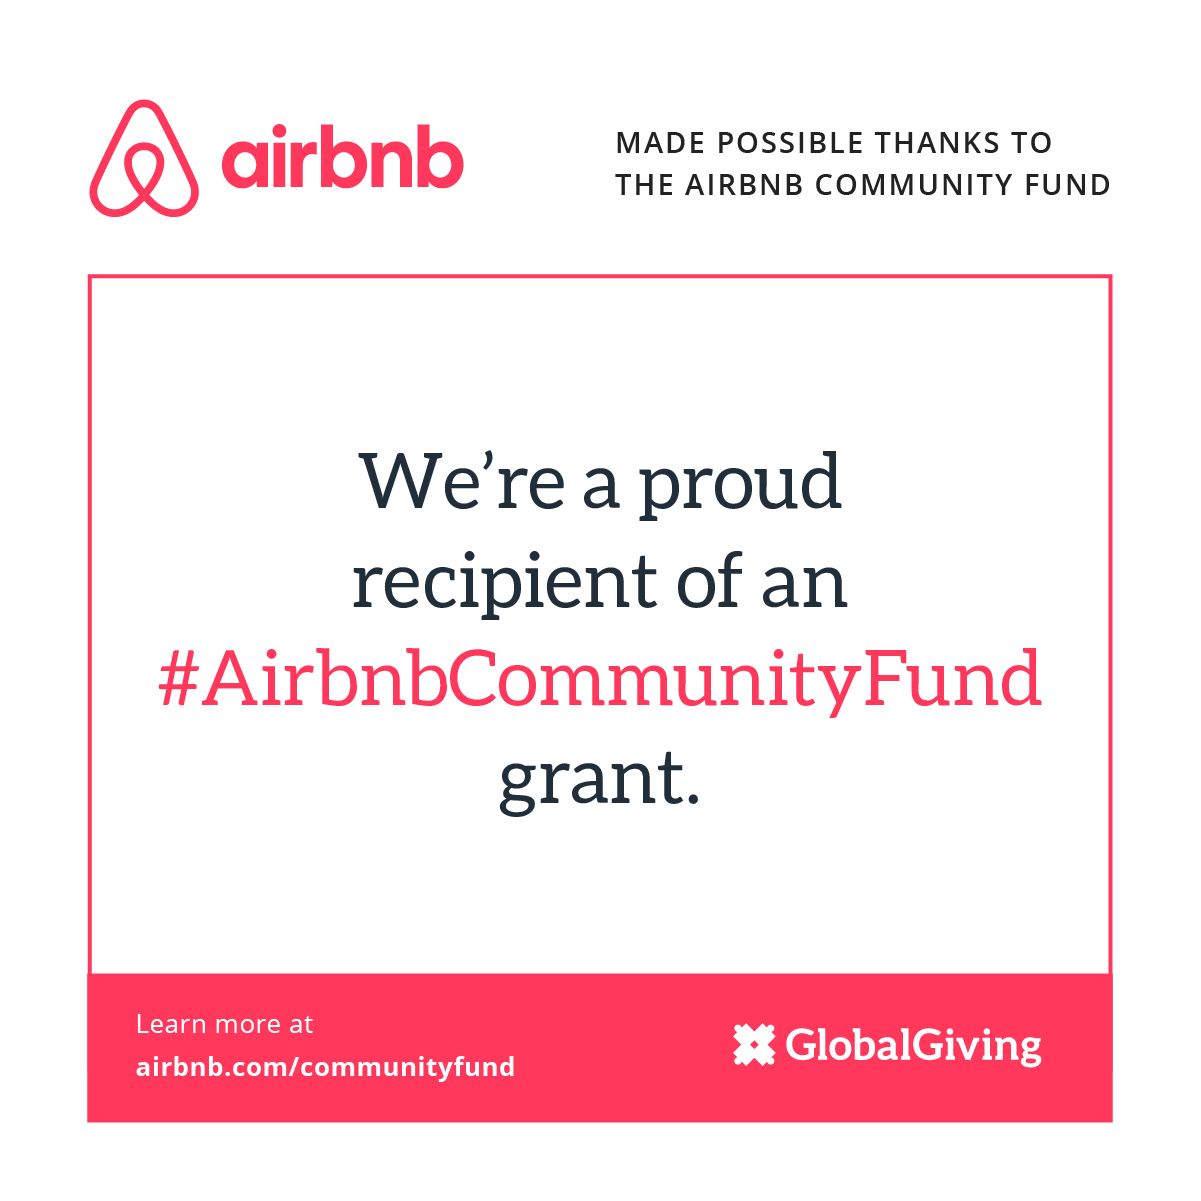 Airbnb Community Fund Grant Recipient